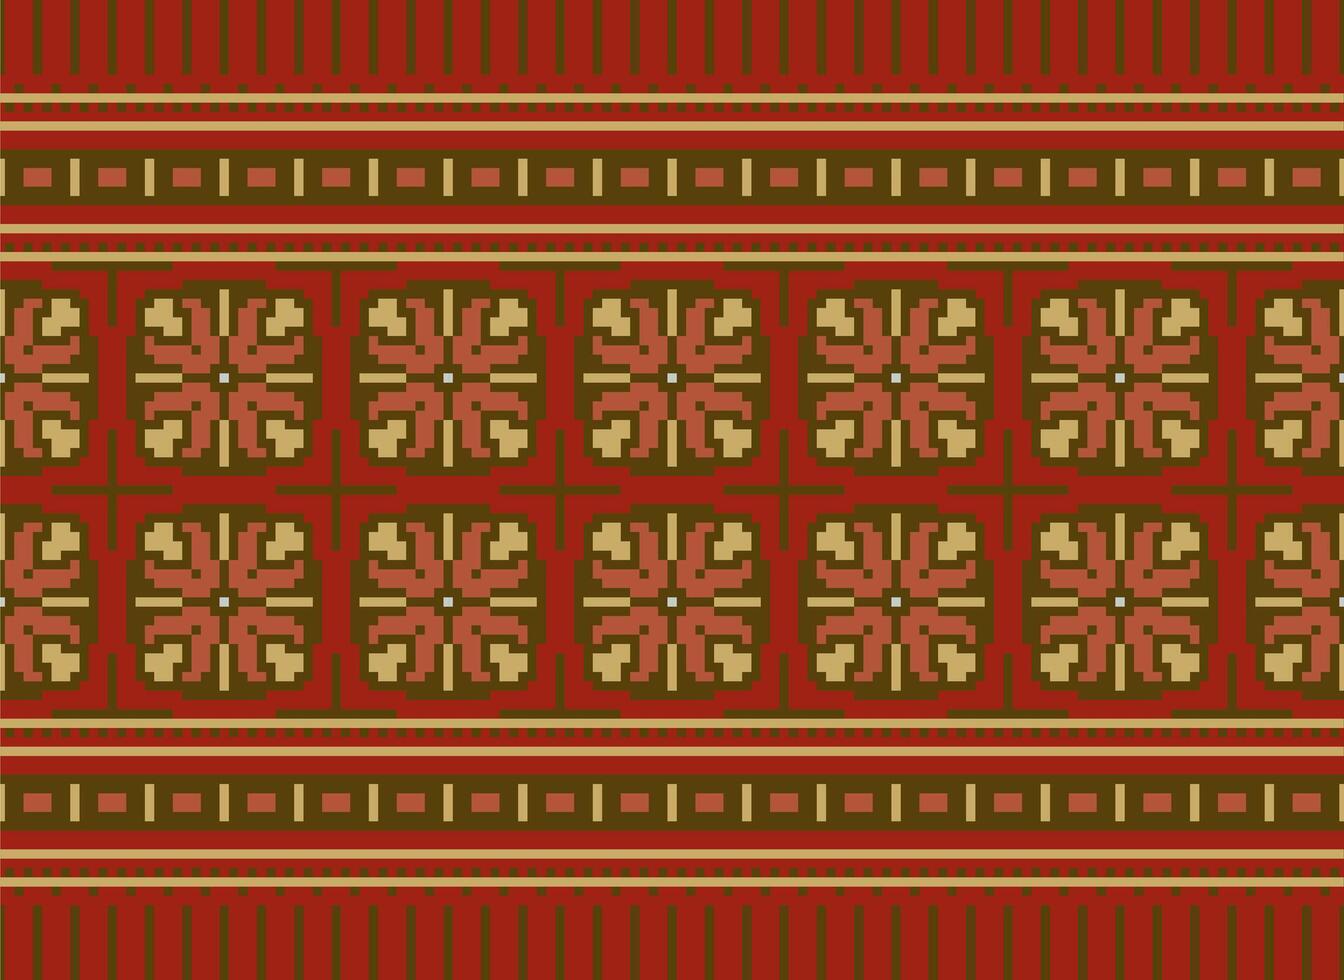 zmijanjski vez bordado estilo vetor grandes horizontal desatado padronizar - têxtil ou tecido impressão inspirado de ponto de cruz folk arte desenhos a partir de Bósnia e herzegovina